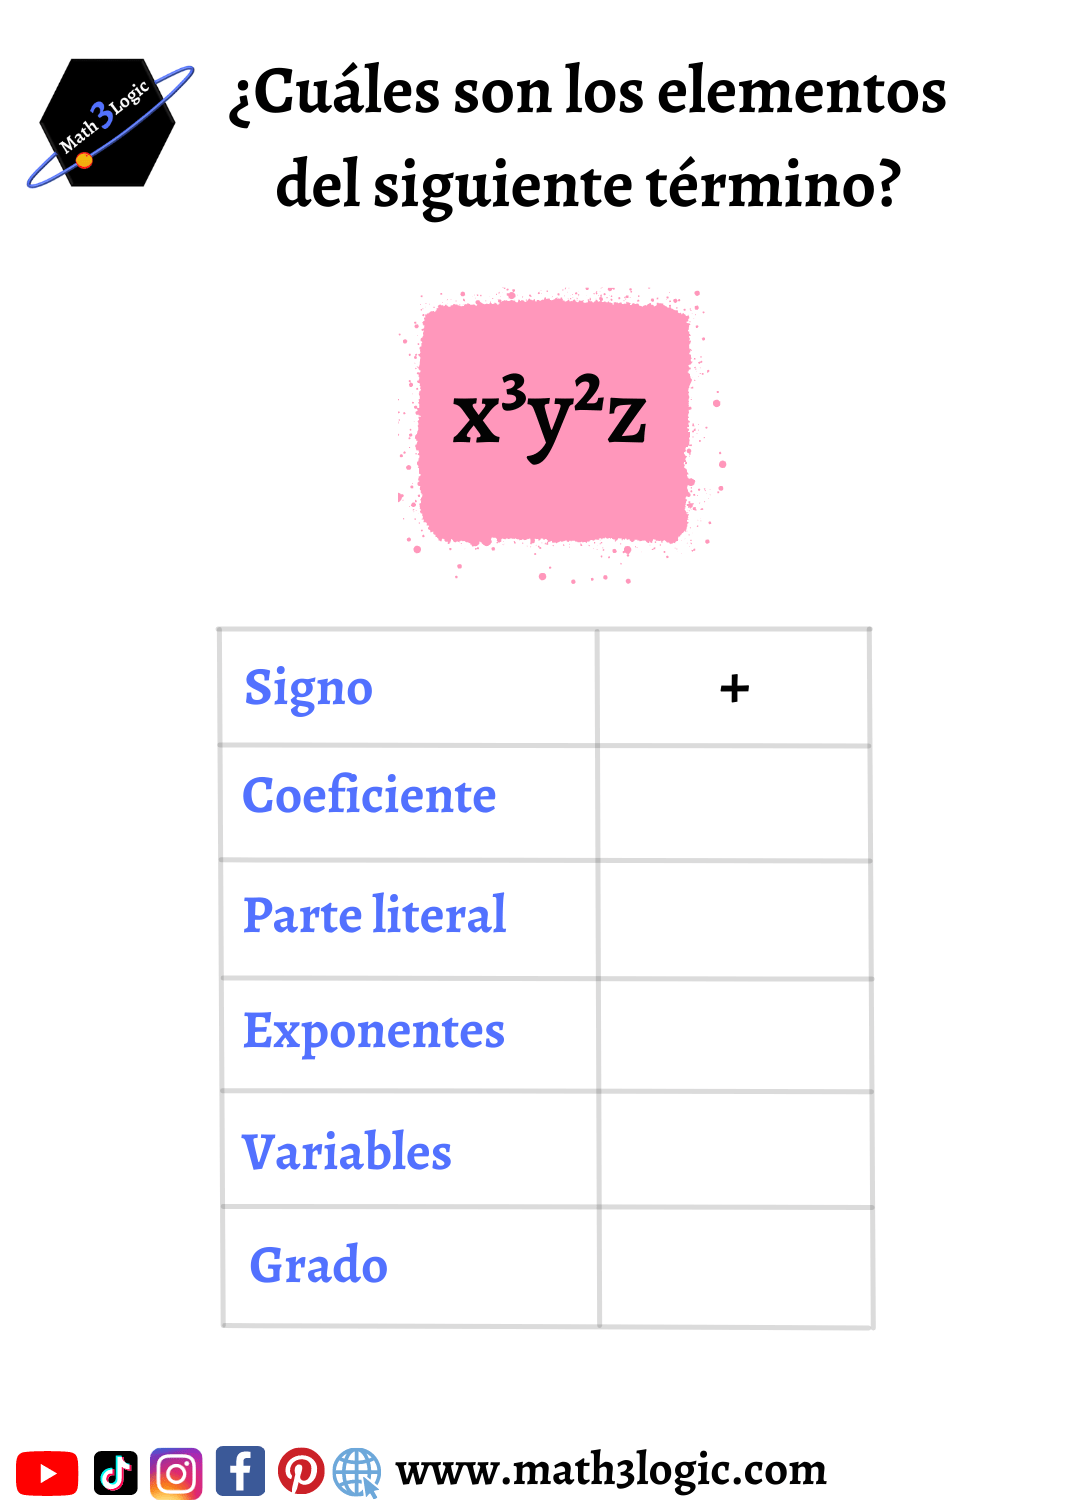 Elementos de un término ejercicio math3logic